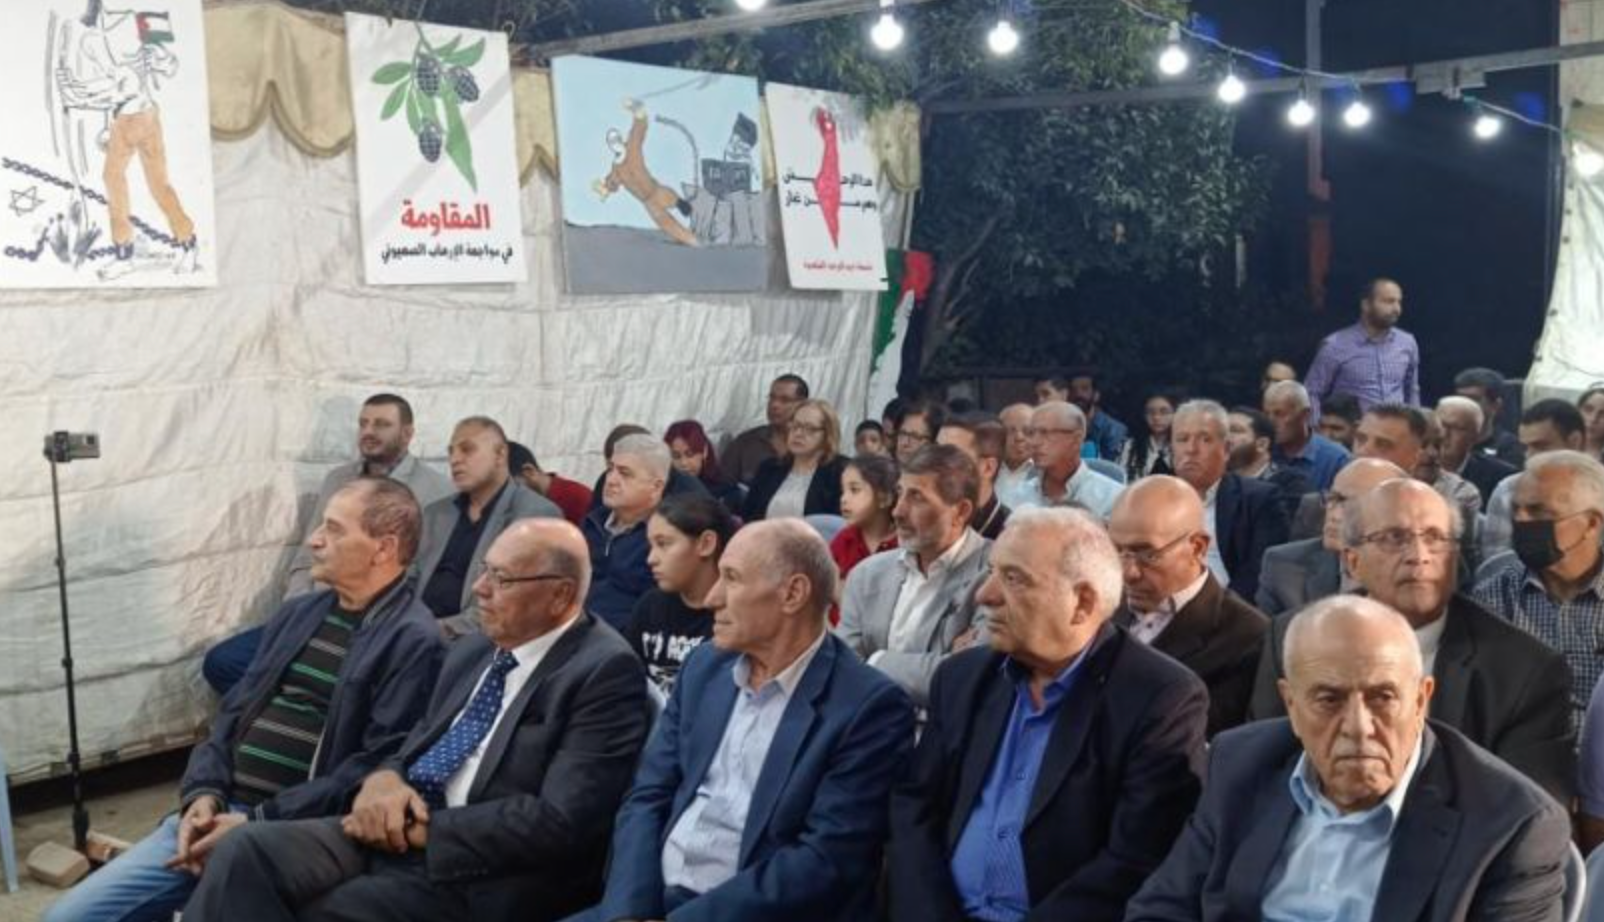 حزب أردني يفتتح خيمة تضامنية مع الأسرى الفلسطينيين